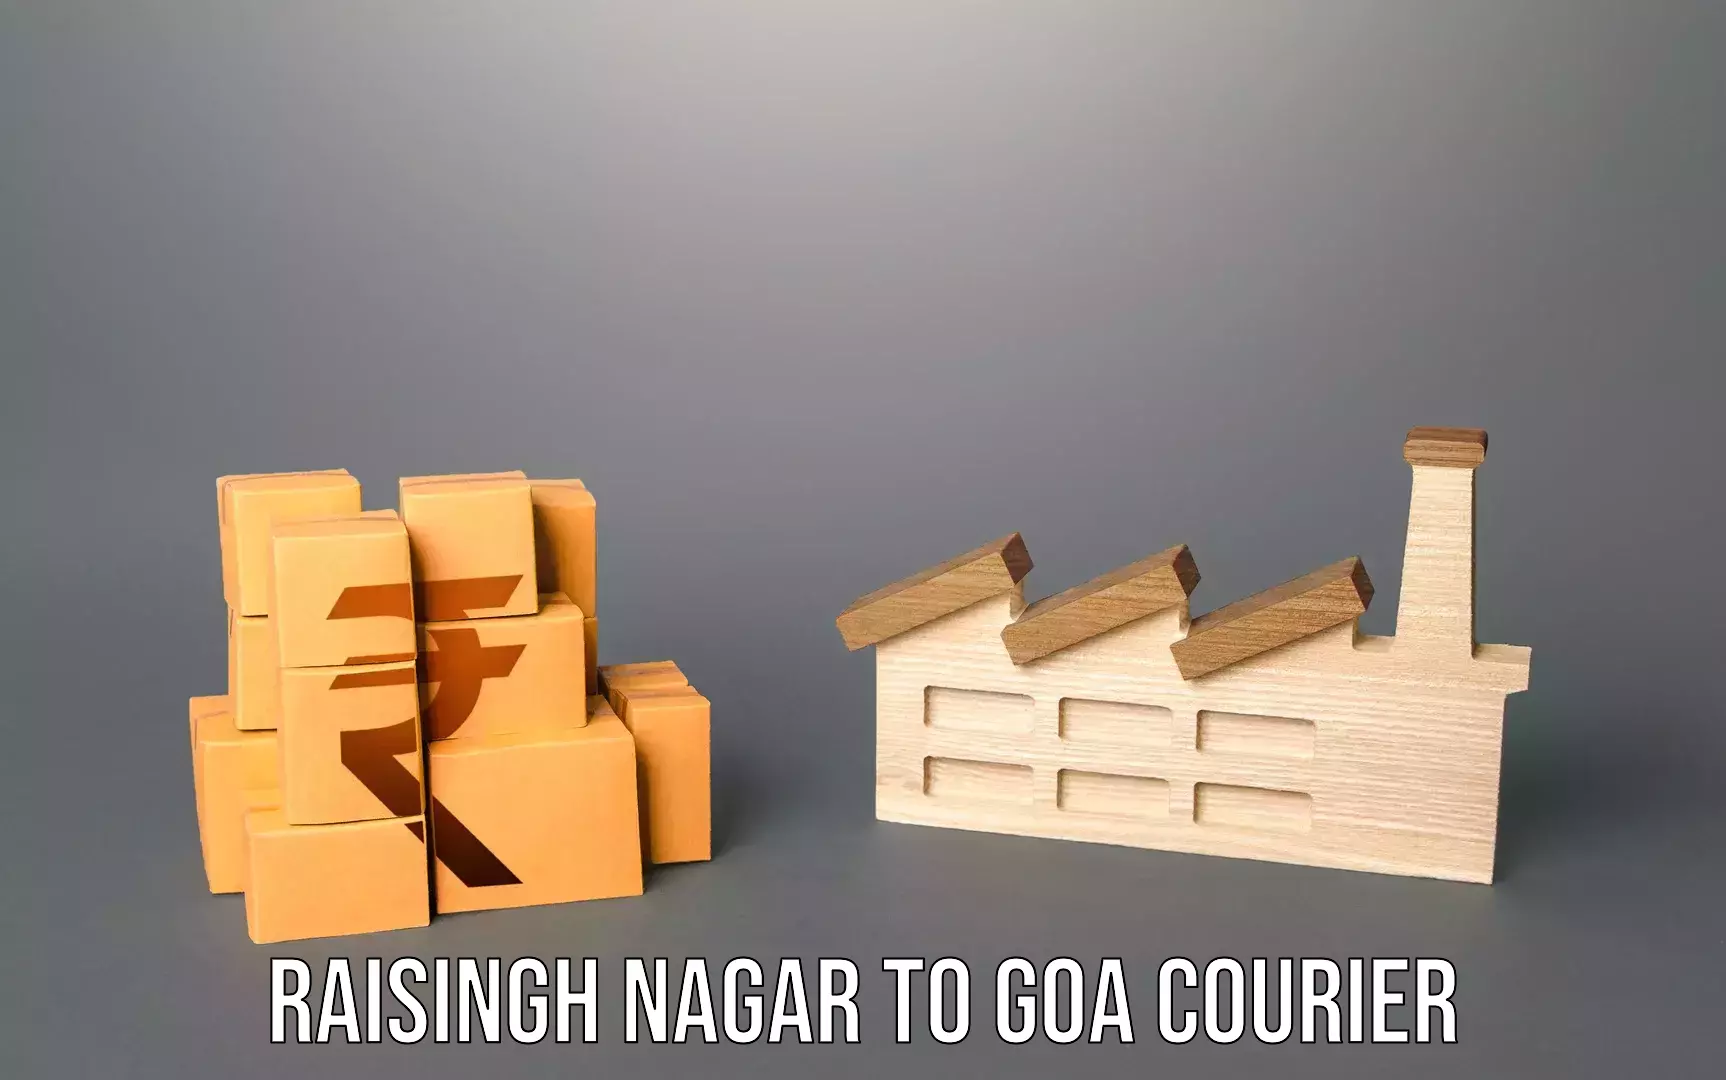 Baggage courier FAQs Raisingh Nagar to Goa